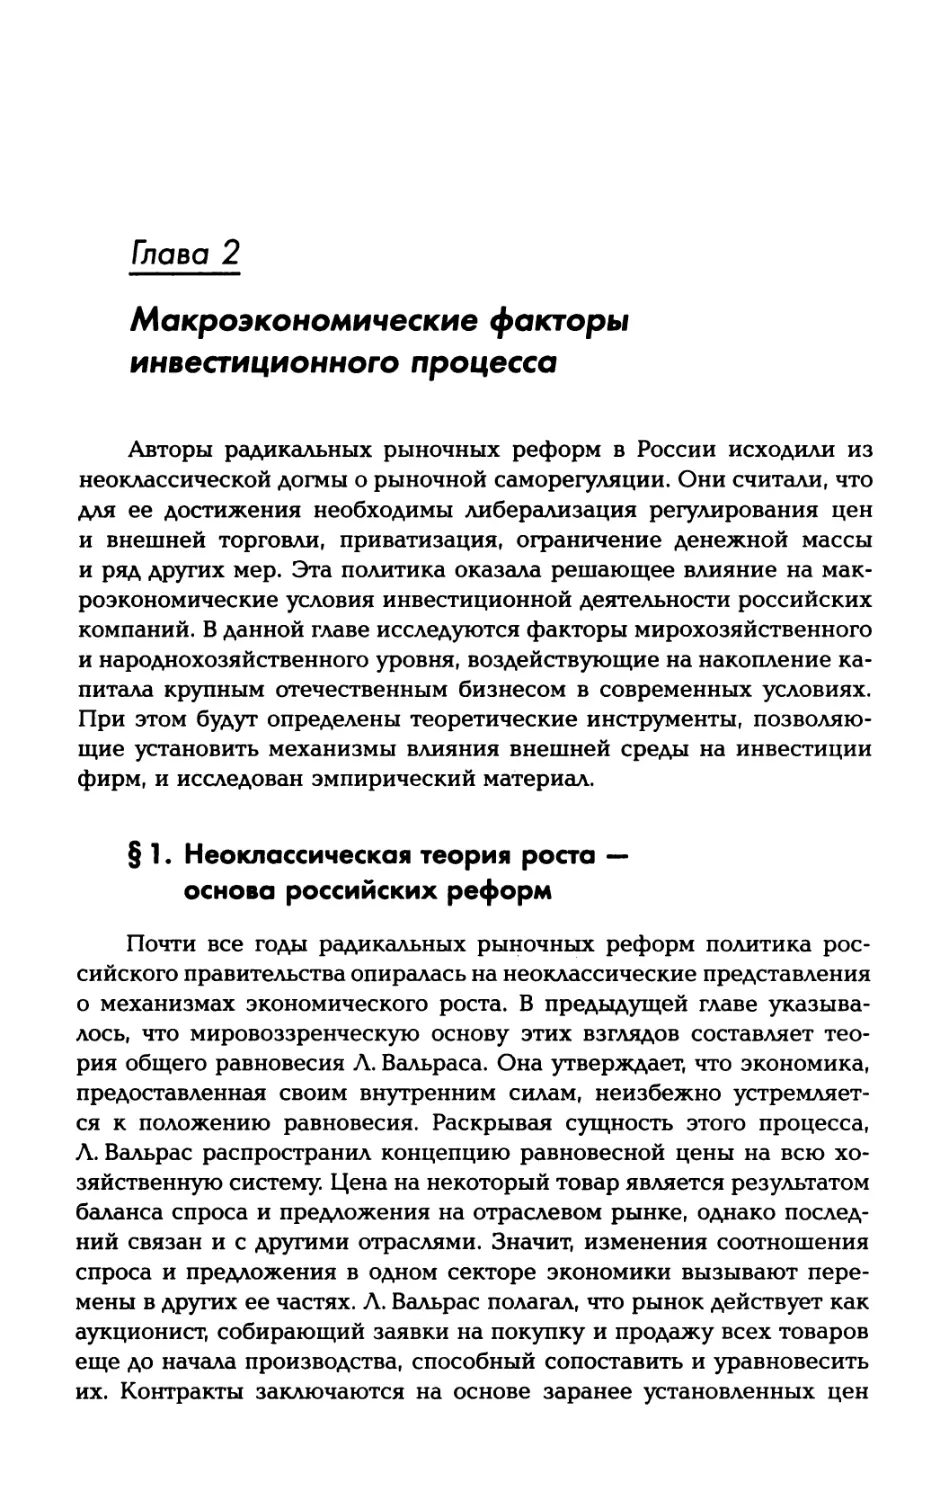 Глава 2. Макроэкономические факторы инвестиционного процесса
§ 1. Неоклассическая теория роста — основа российских реформ